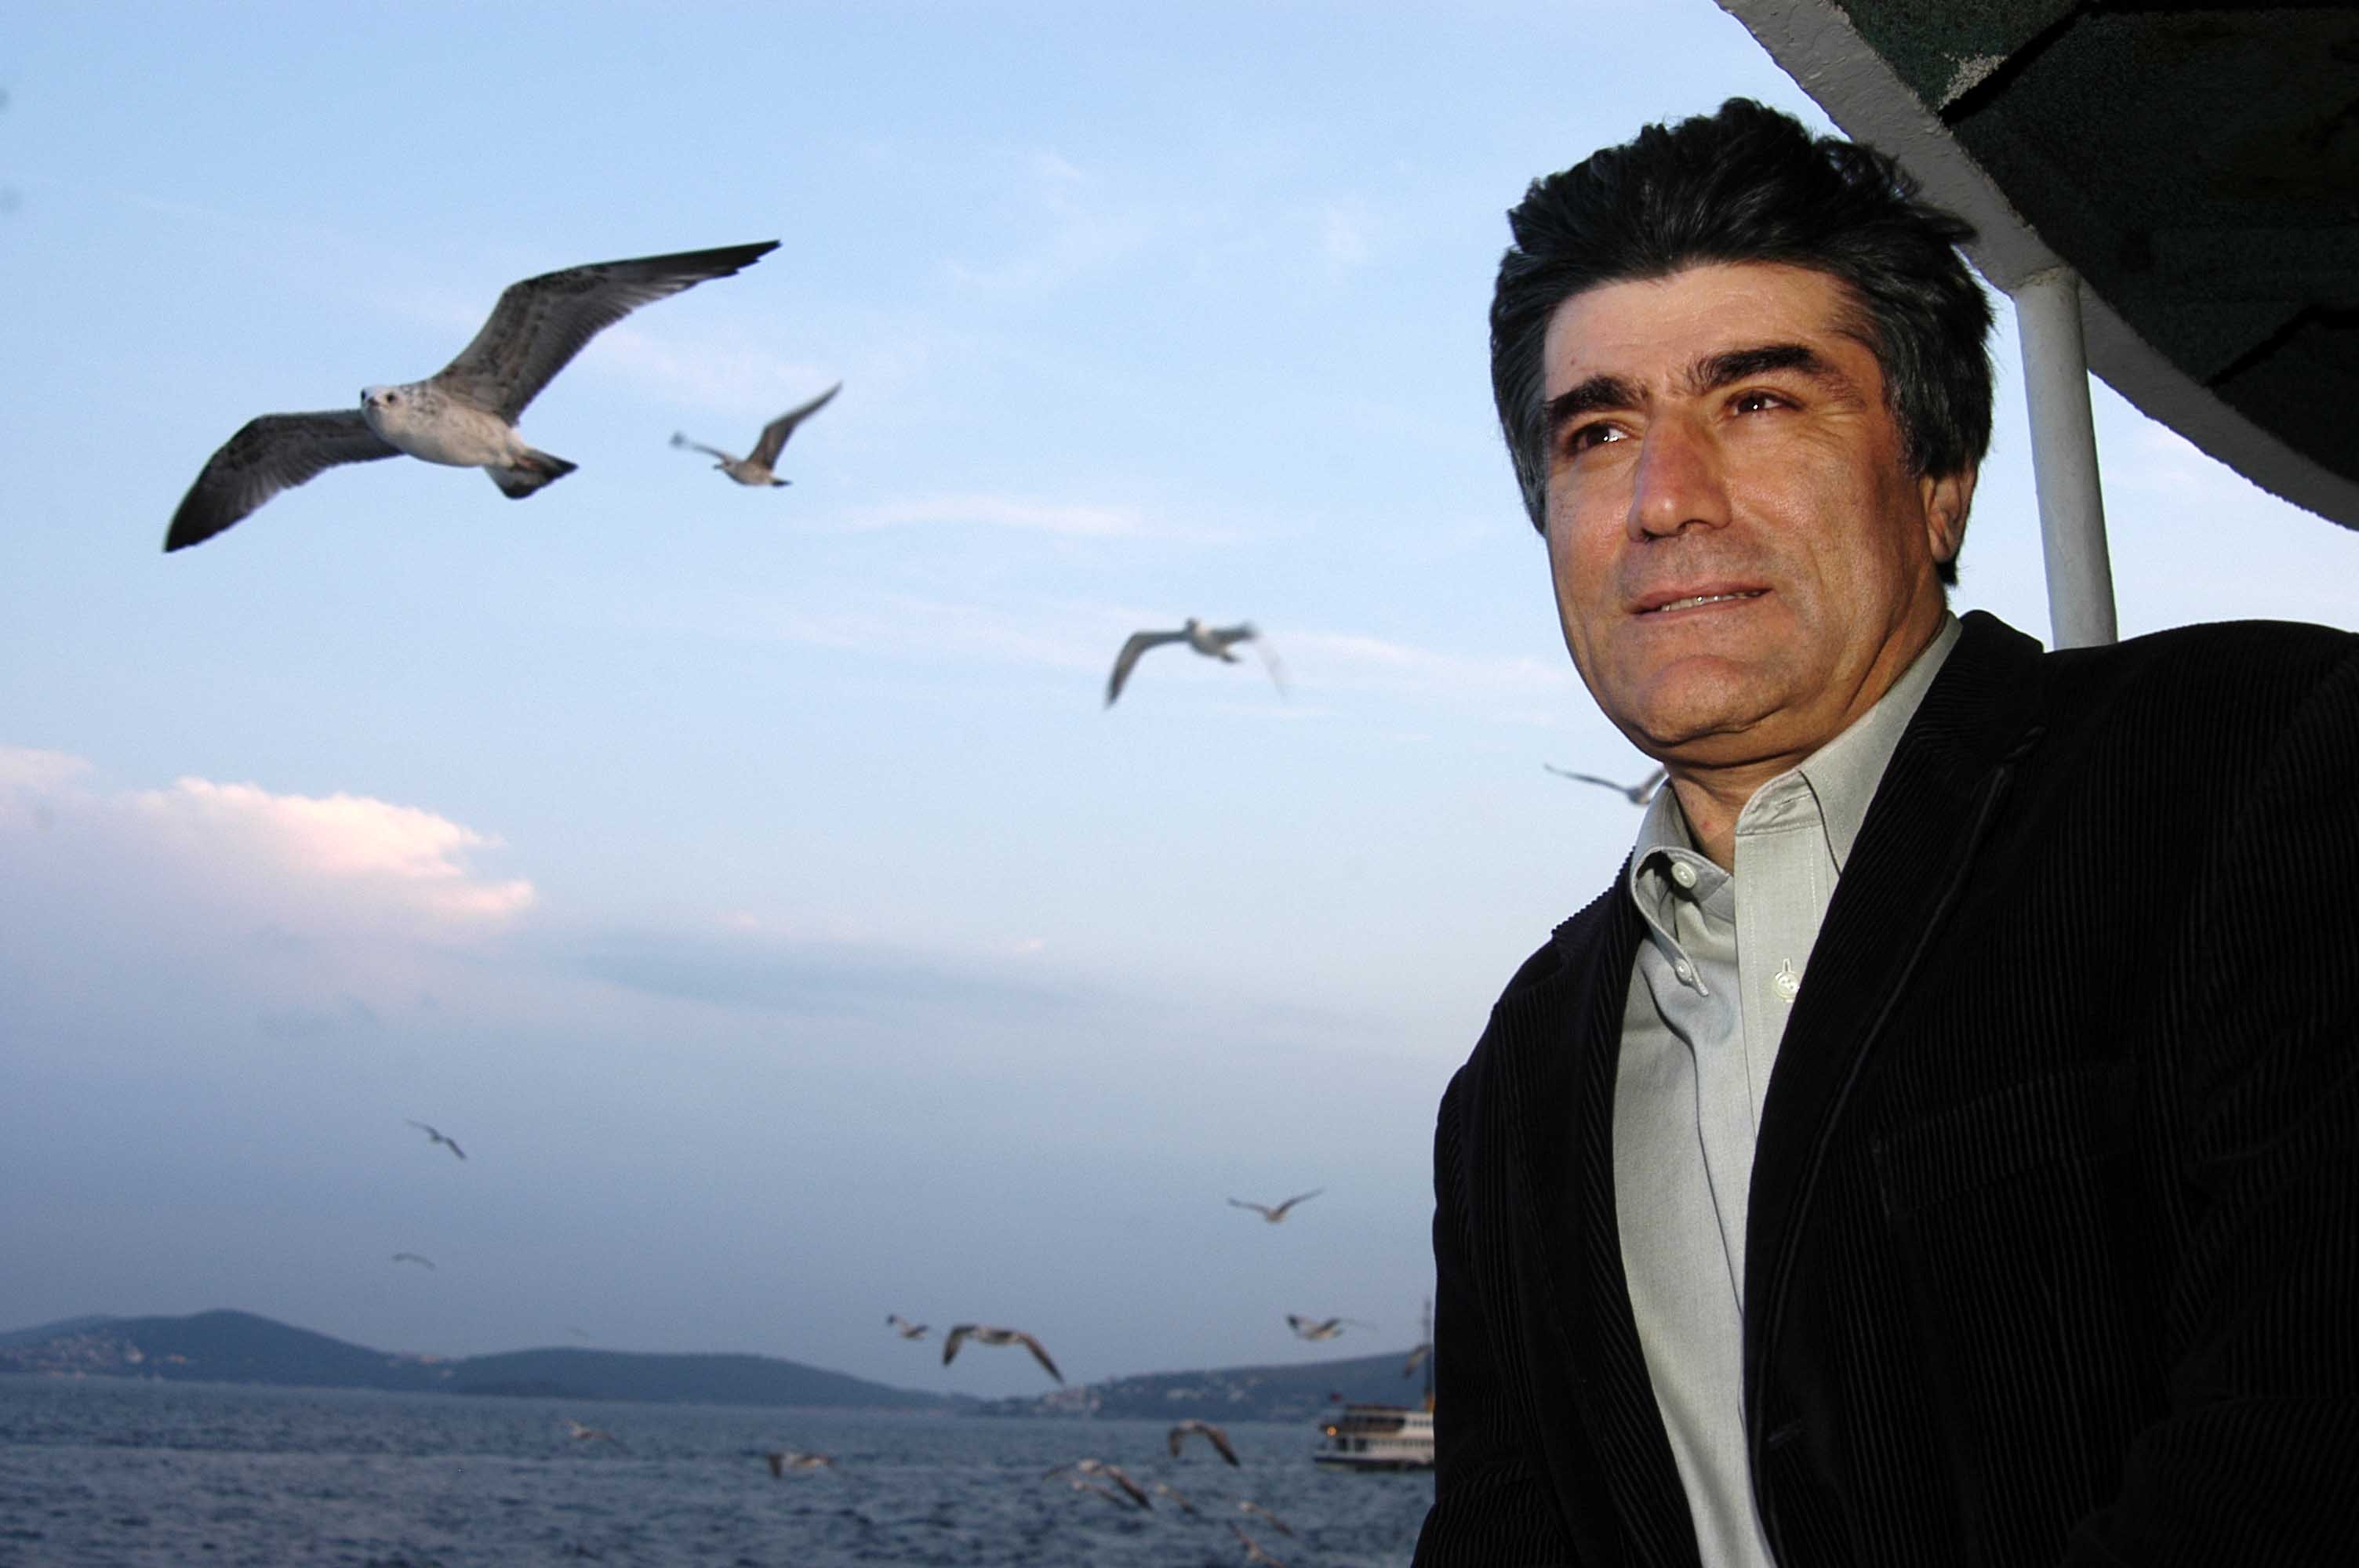 Թուրքիայի Սպիտակ աղավնին՝ Հրանտ Դինքն այսօր կդառնար 60 տարեկան